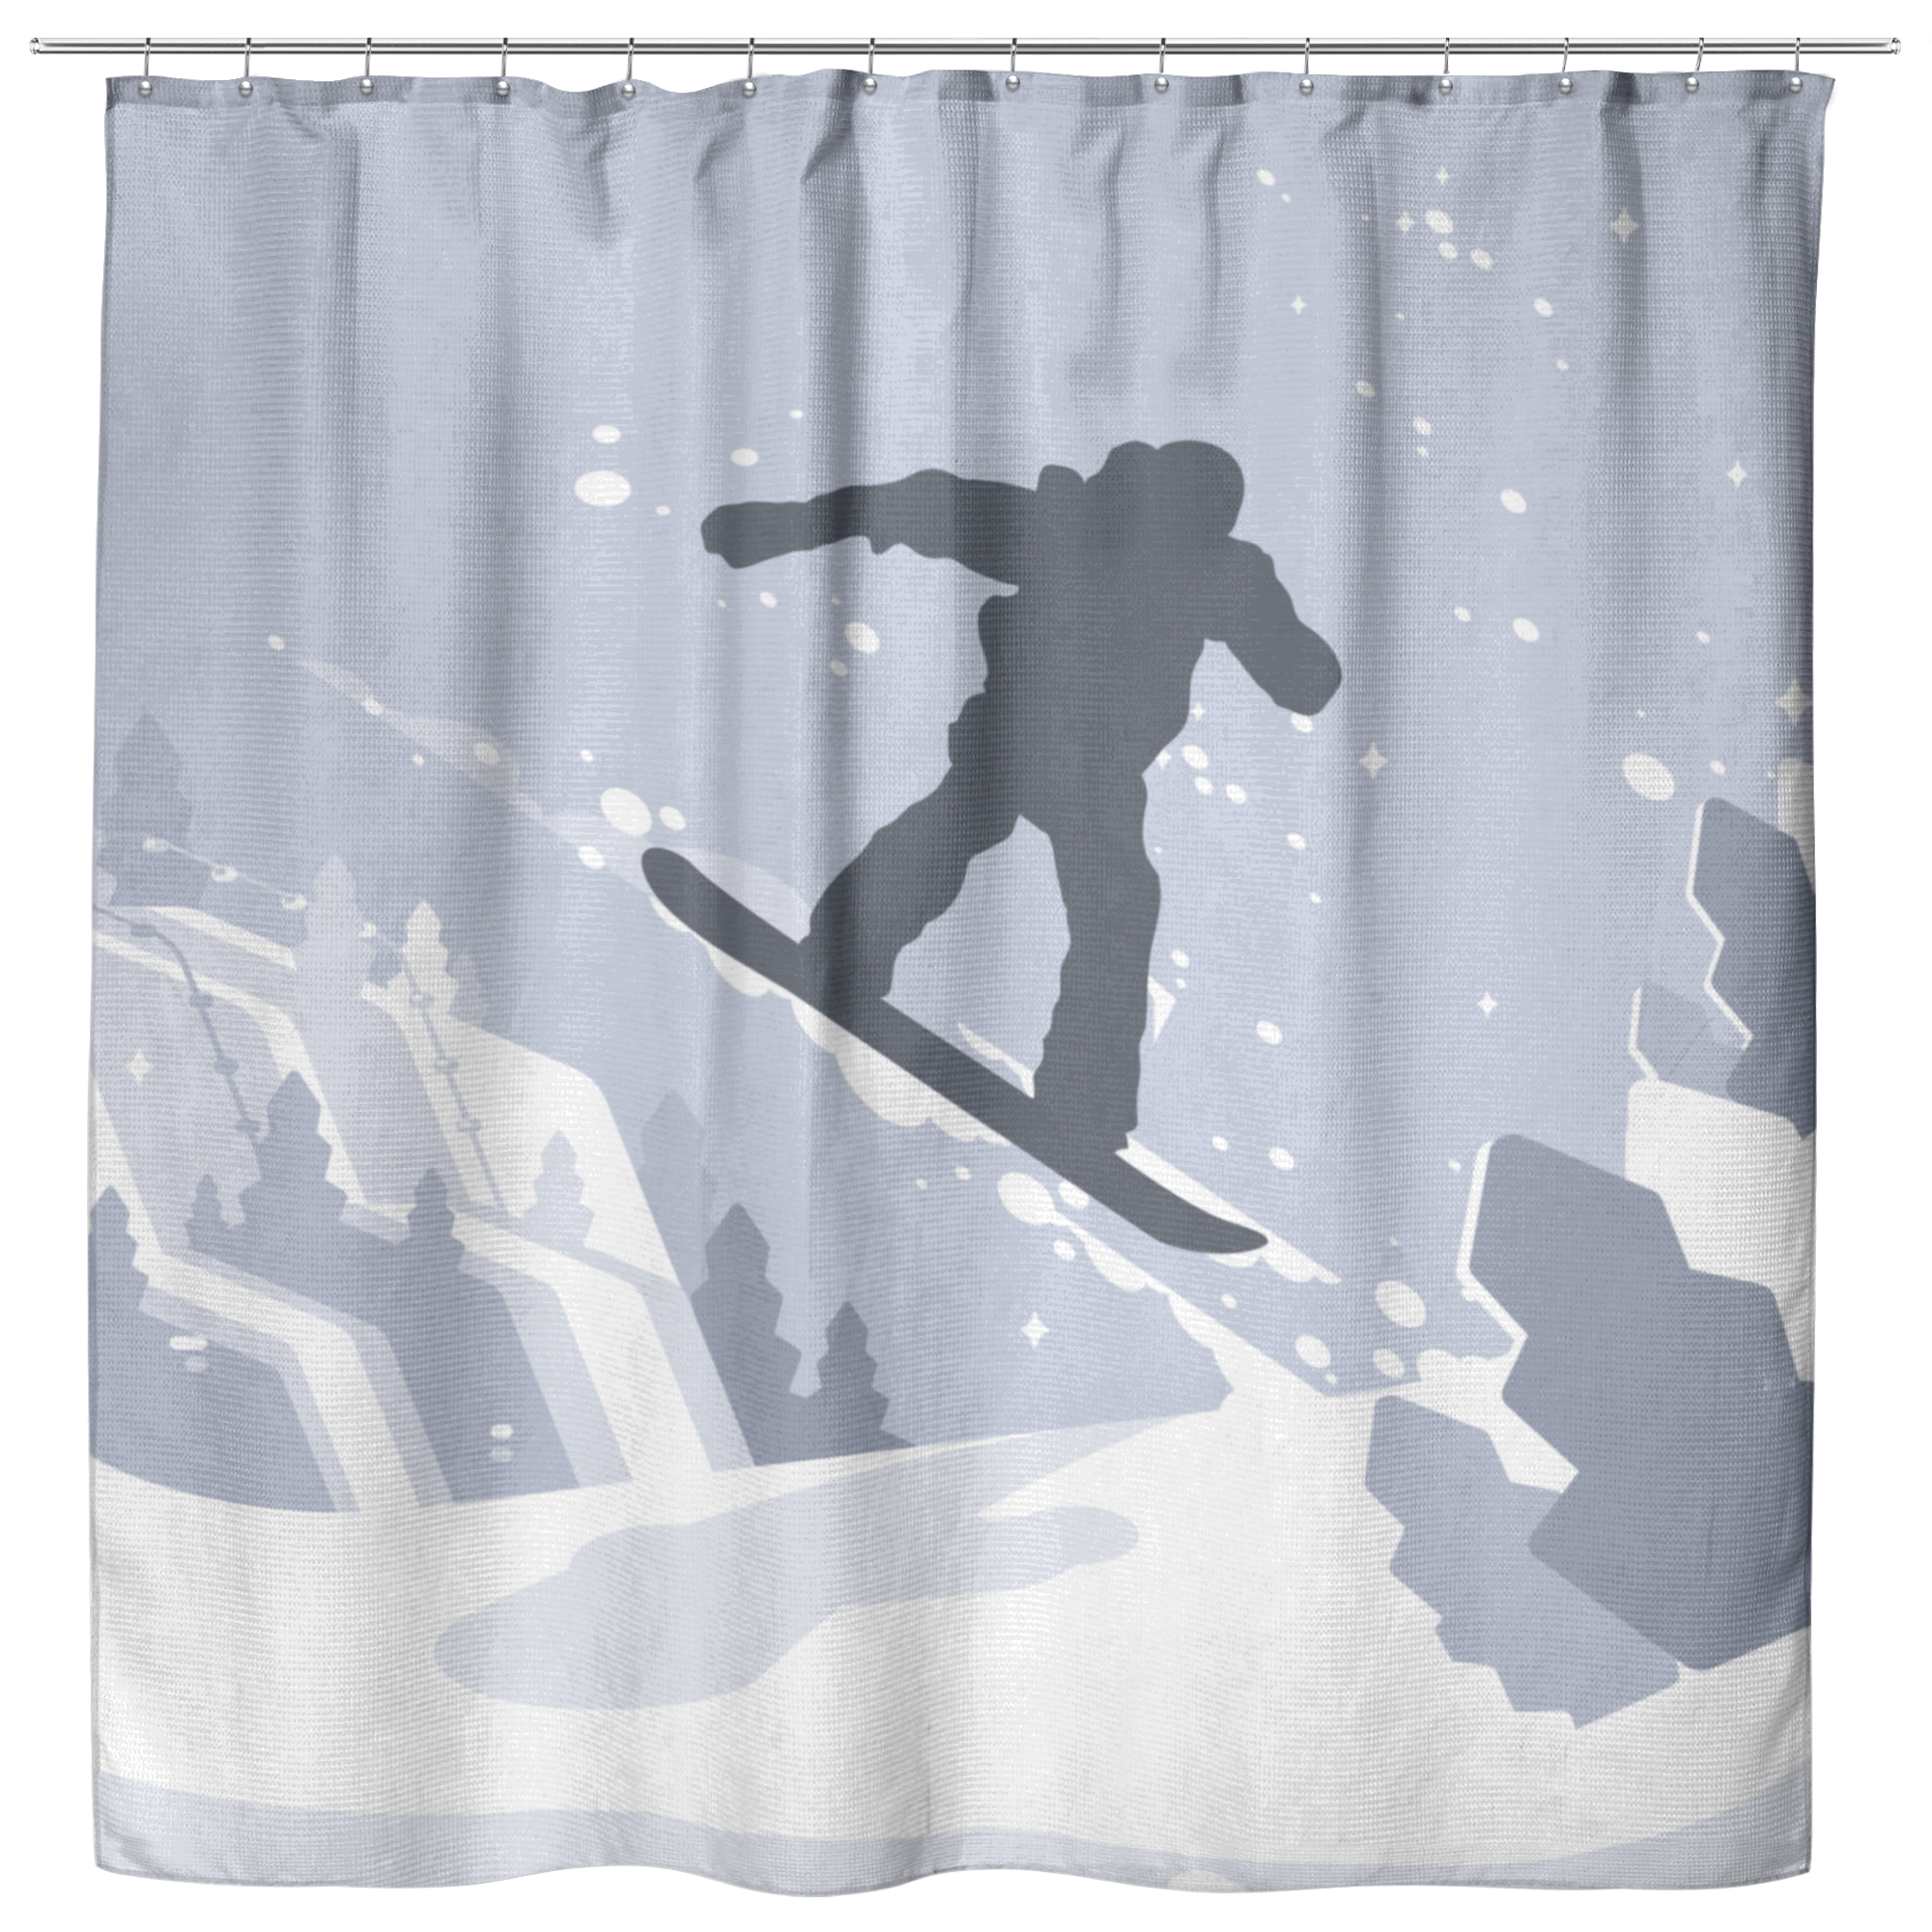 Snowboarder Playground Shower Curtains - Powderaddicts